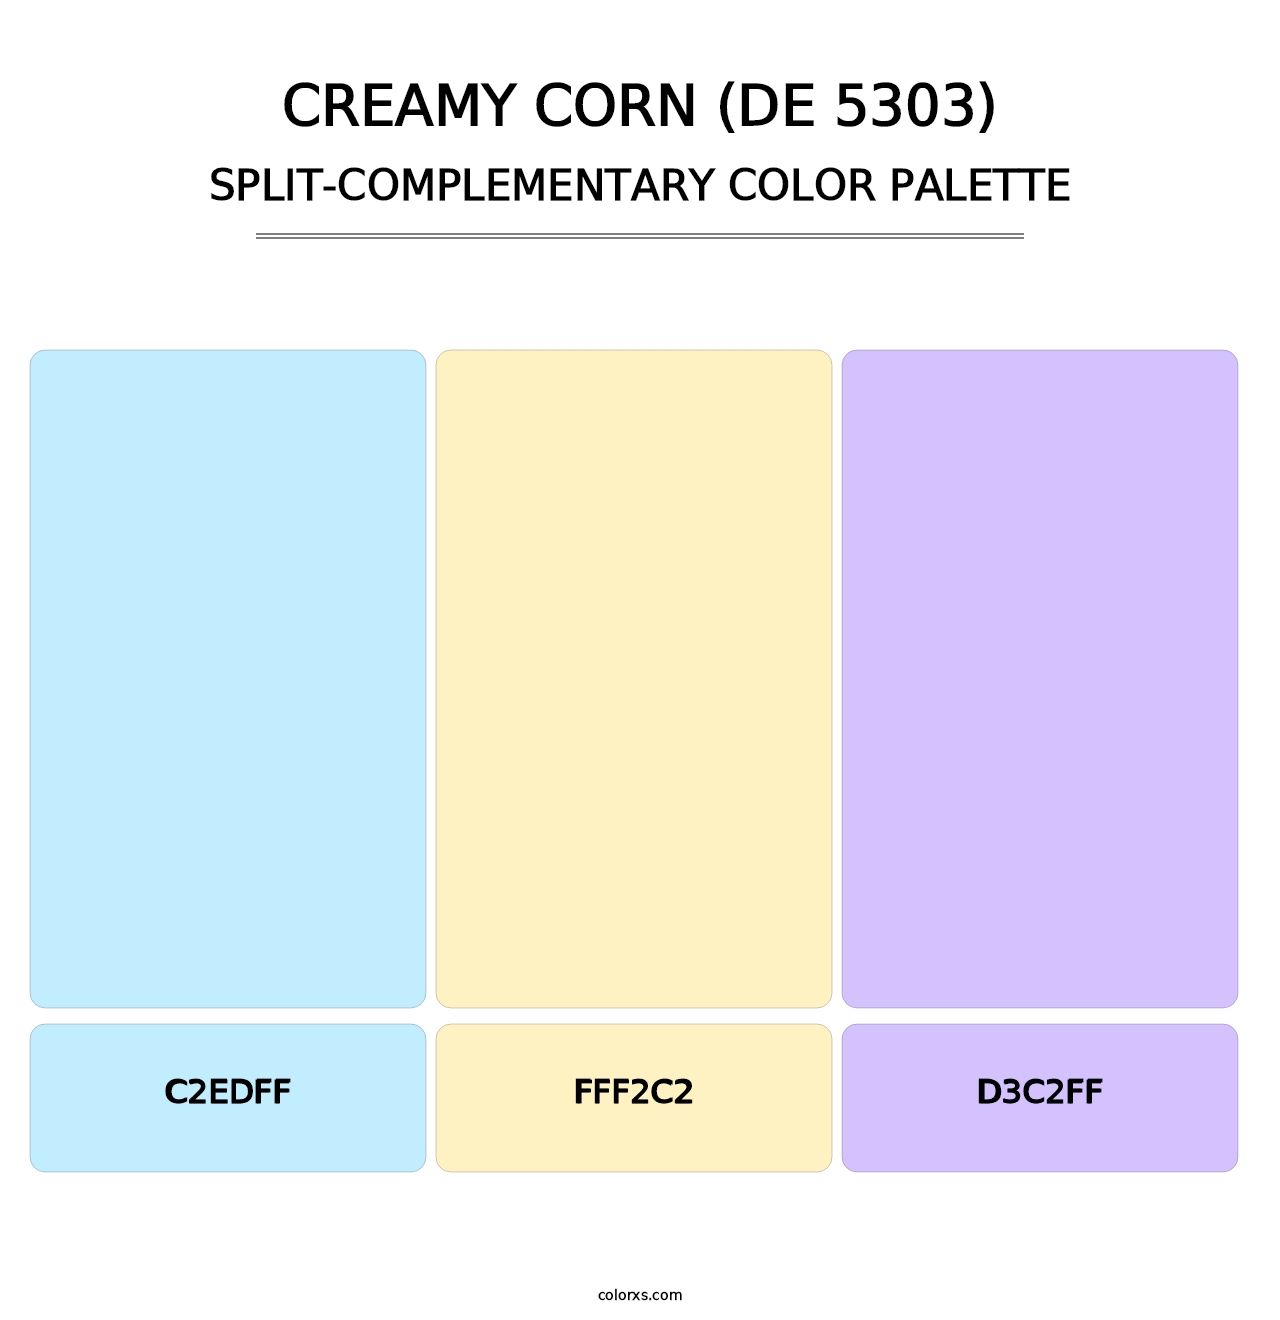 Creamy Corn (DE 5303) - Split-Complementary Color Palette